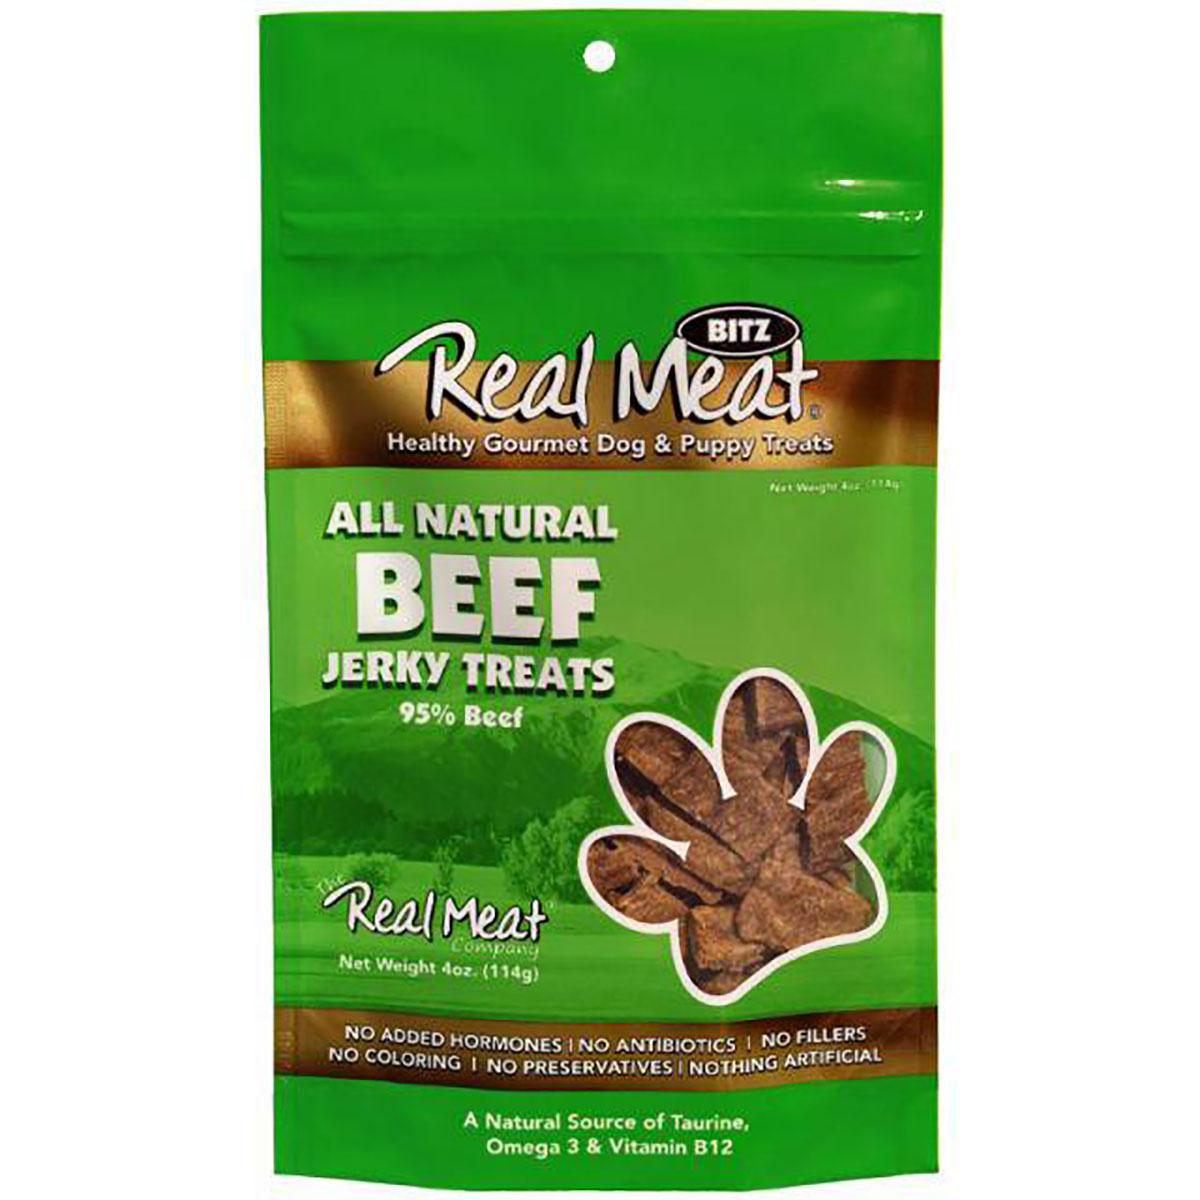 Real Meat Beef Bitz Jerky Dog Treats